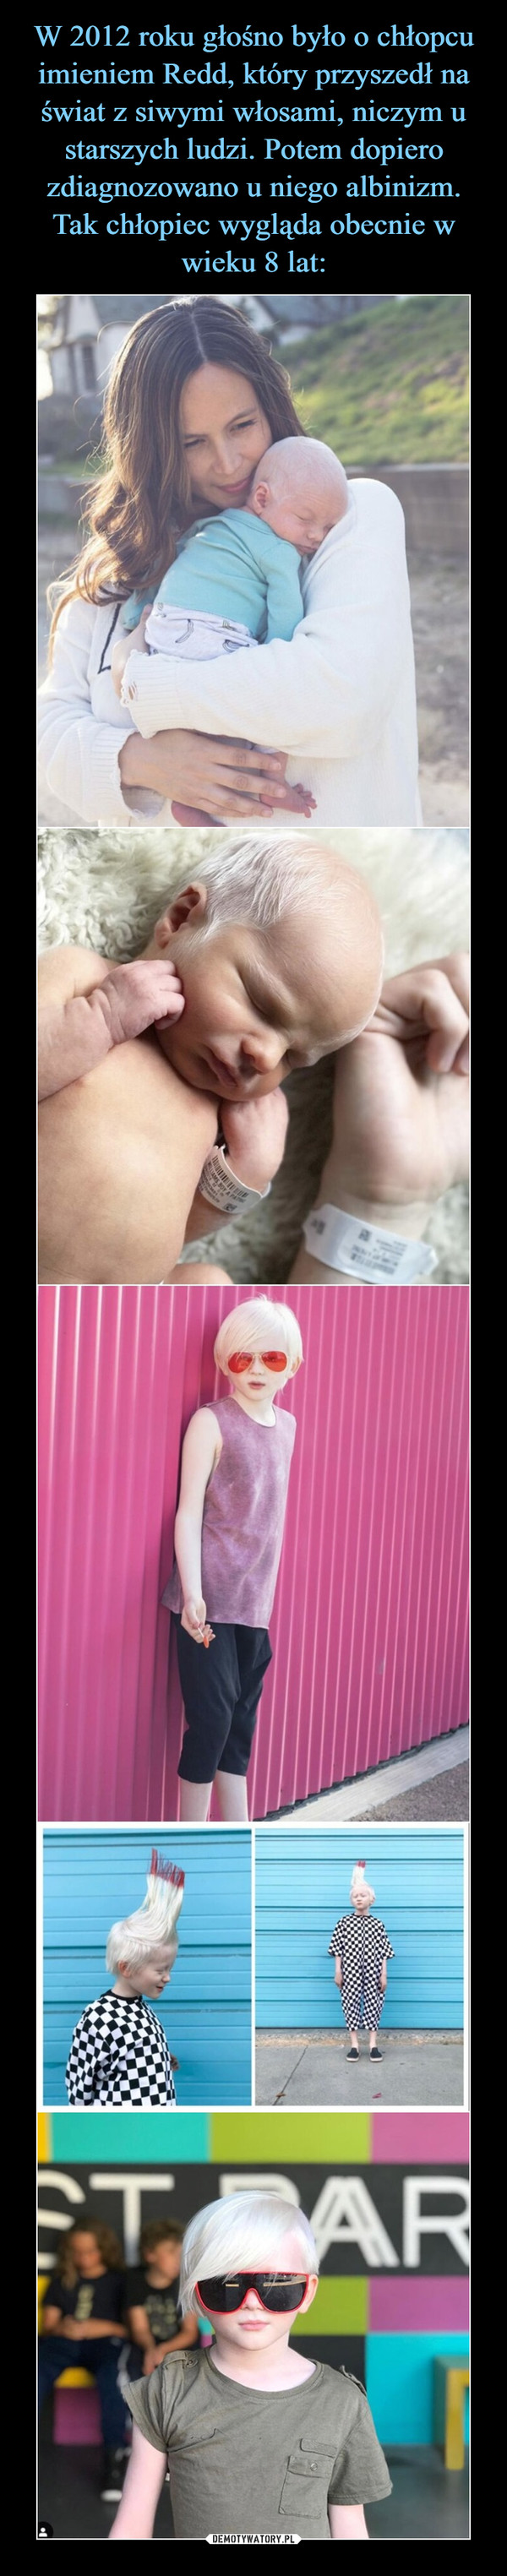 W 2012 roku głośno było o chłopcu imieniem Redd, który przyszedł na świat z siwymi włosami, niczym u starszych ludzi. Potem dopiero zdiagnozowano u niego albinizm. Tak chłopiec wygląda obecnie w wieku 8 lat: